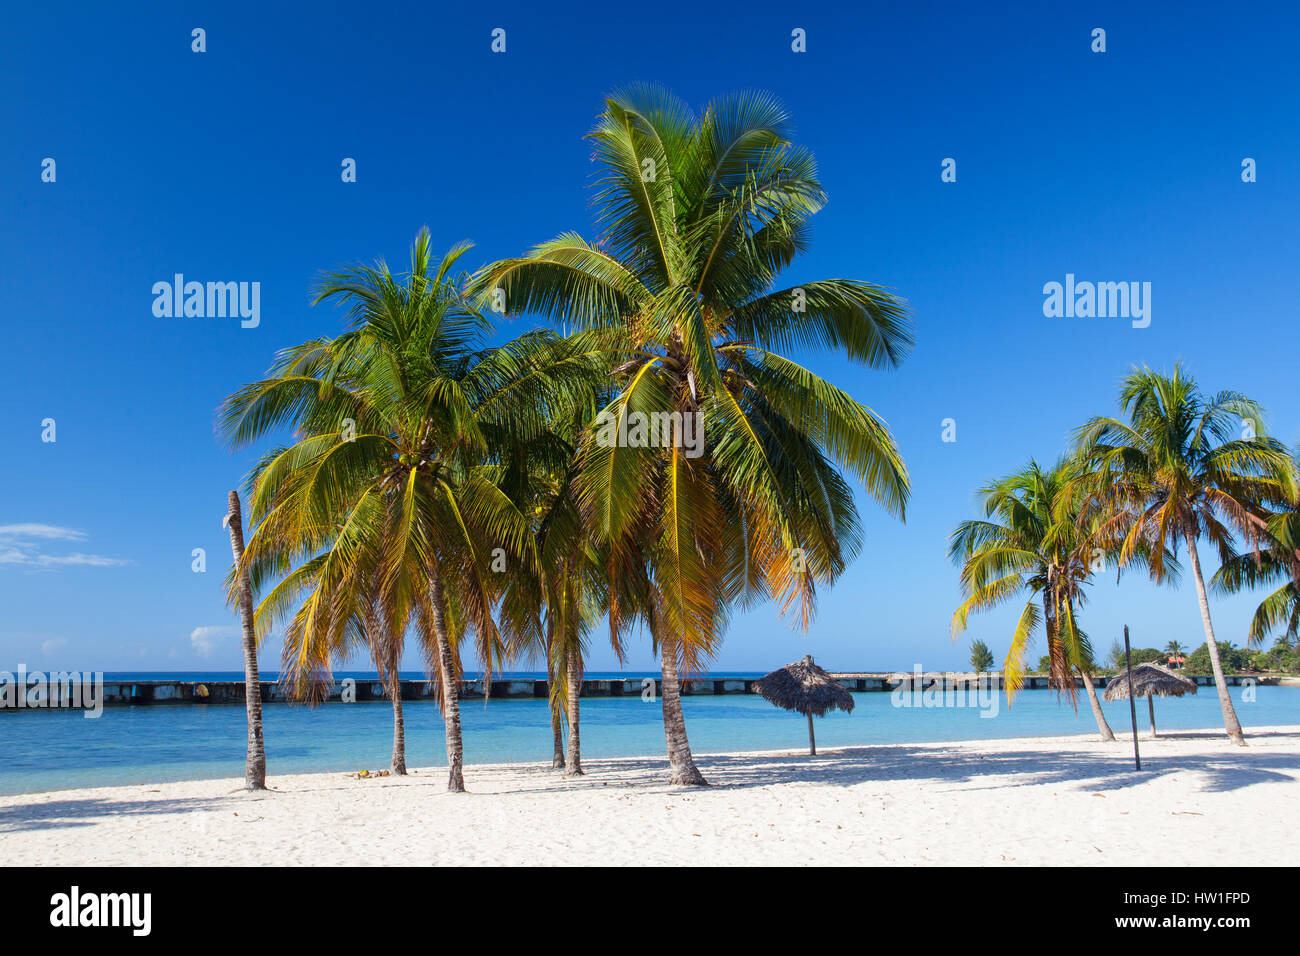 Am Strand Playa Giron, Kuba. Dieser Strand ist berühmt für seine Rolle während der Schweinebucht-Invasion. Stockfoto